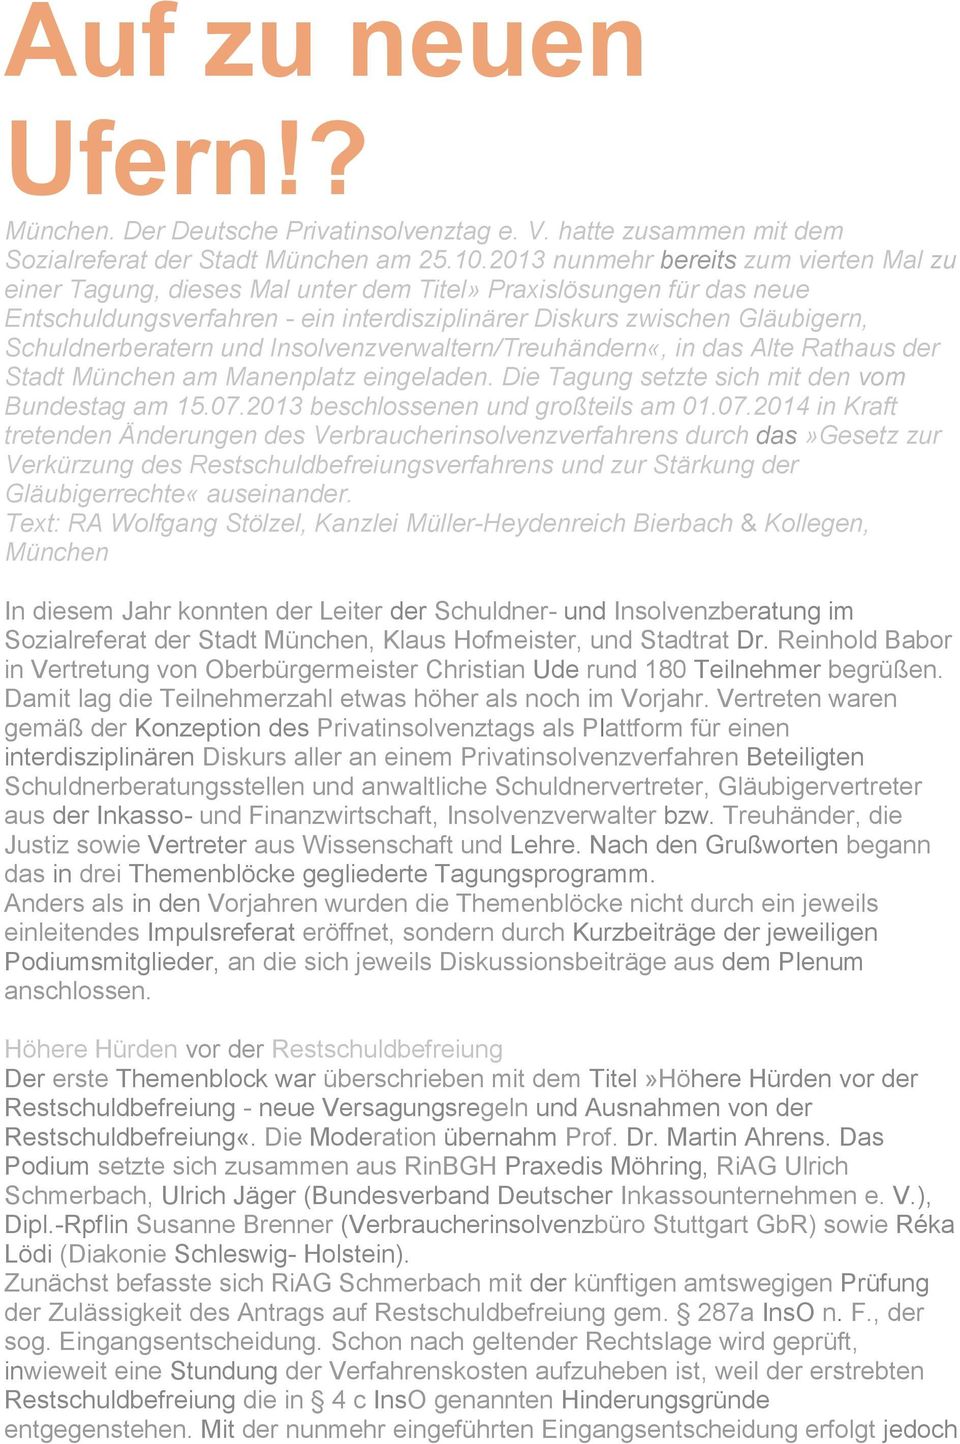 Schuldnerberatern und Insolvenzverwaltern/Treuhändern«, in das Alte Rathaus der Stadt München am Manenplatz eingeladen. Die Tagung setzte sich mit den vom Bundestag am 15.07.